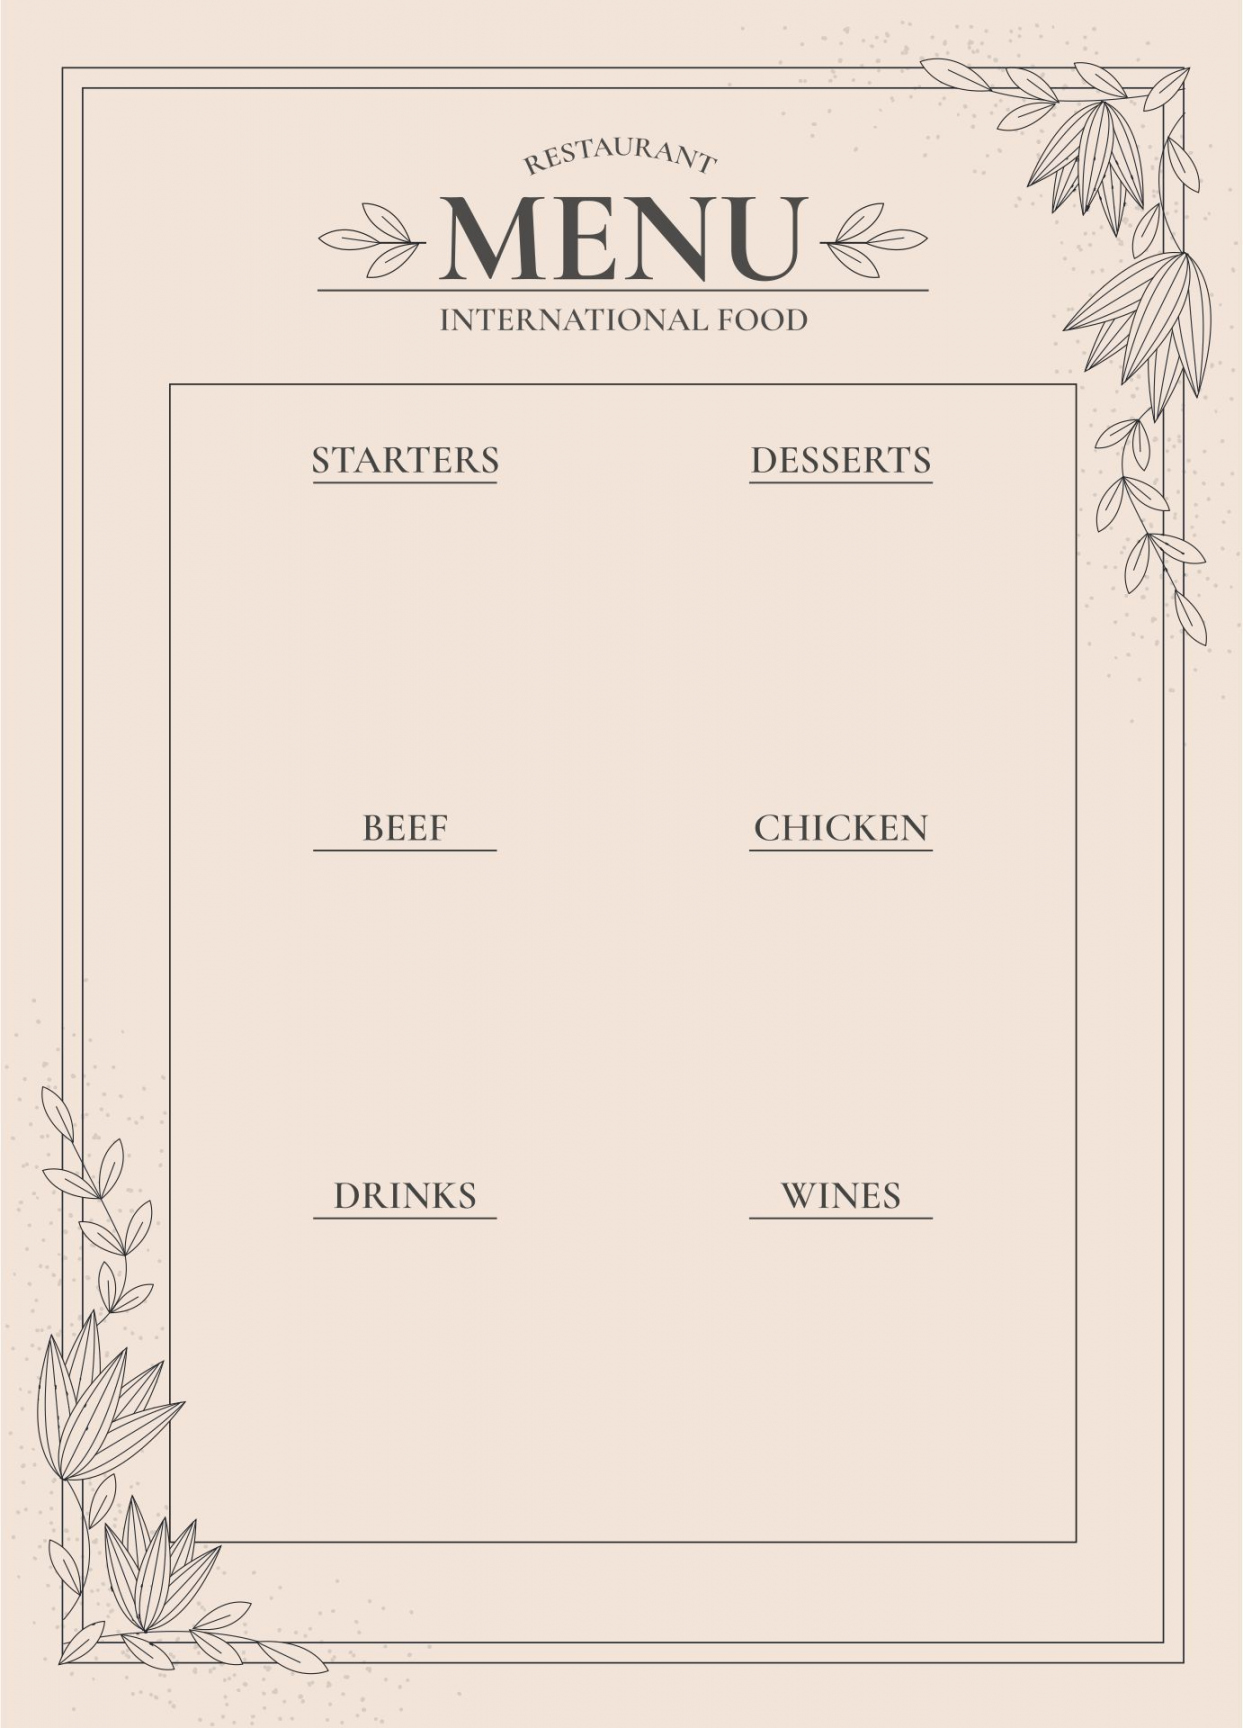 Free Printable Menu Templates - Printable -  Best Printable Blank Restaurant Menus  Menu restaurant, Menu